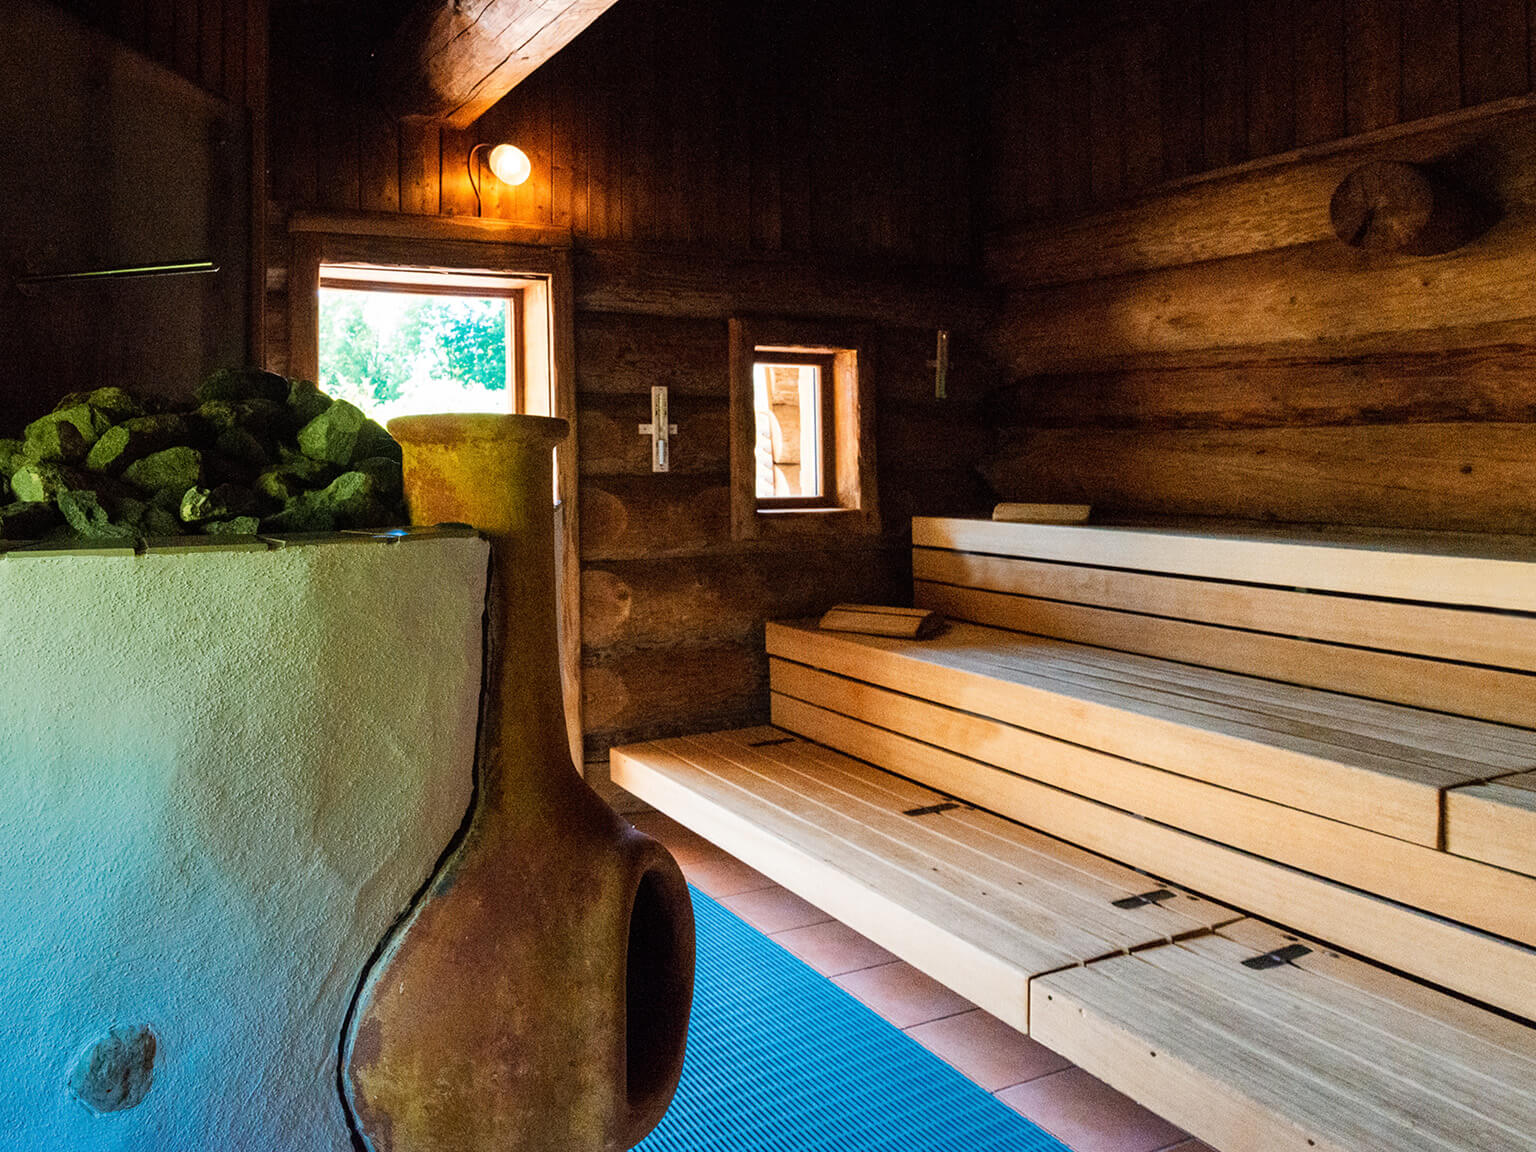 Blick in eine Sauna. Rechts die Sitzbänke aus hellem Holz, links der Ofen mit kleinem Kamin